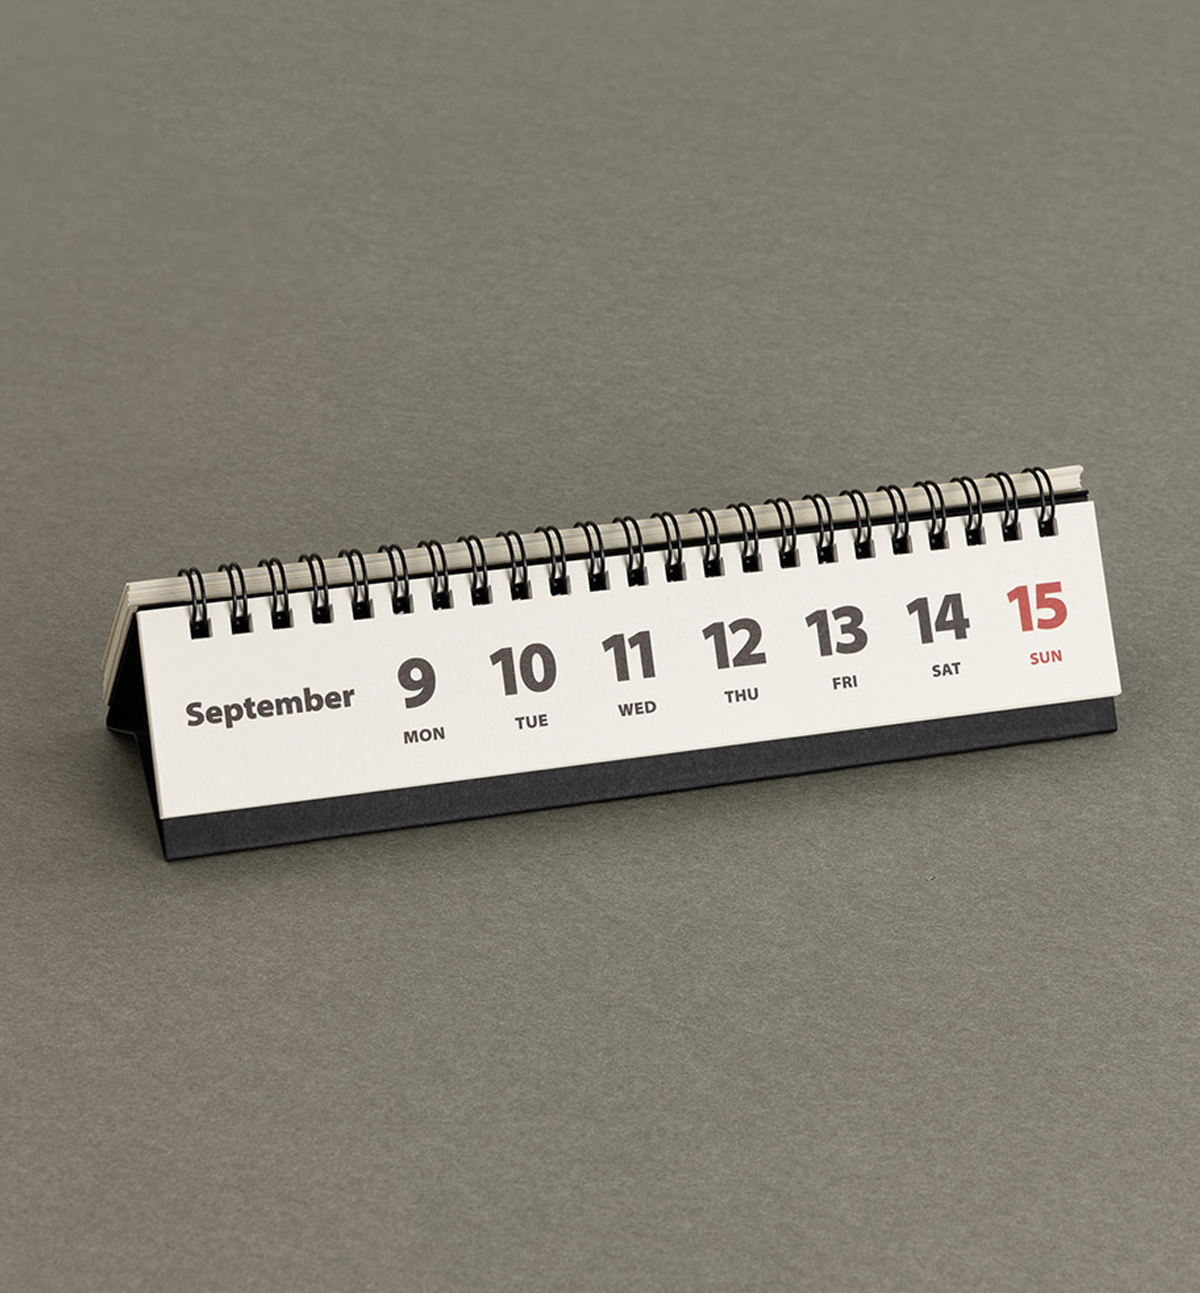 2024 Life & Pieces Desk Weekly Calendar